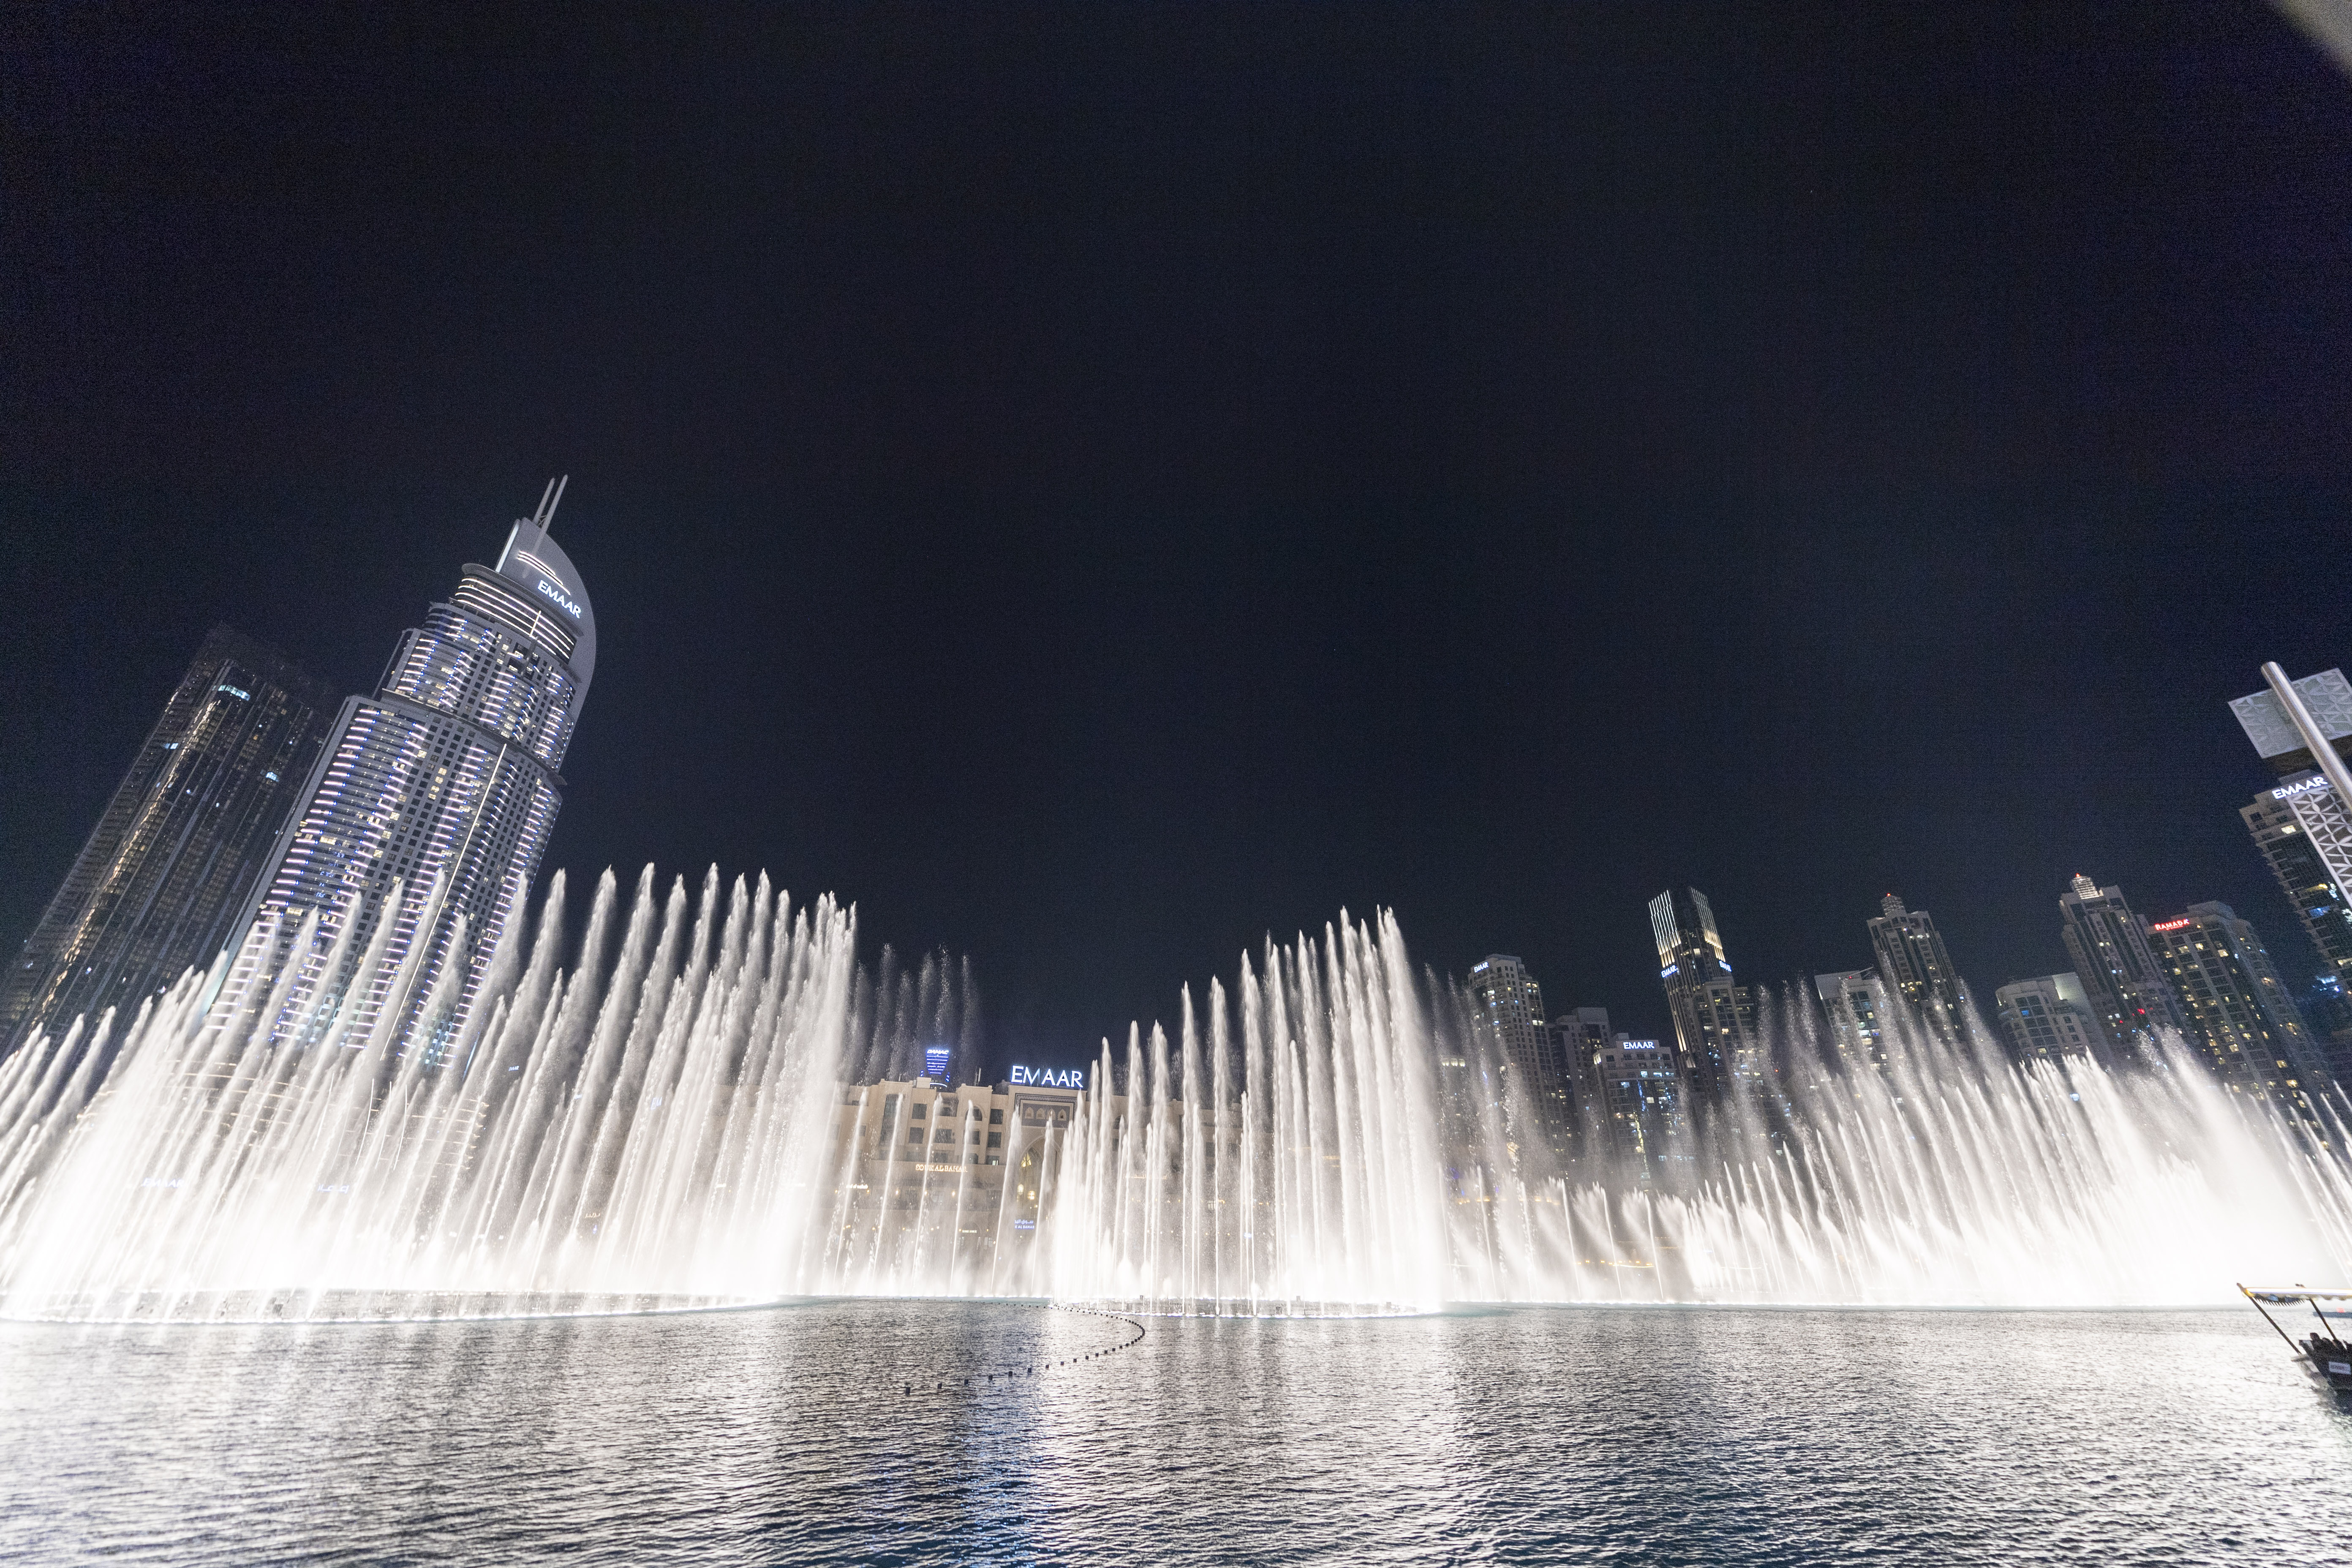 1/ 12 迪拜音乐喷泉(dubai fountain)是世界最大的喷泉 ,也是最壮观的